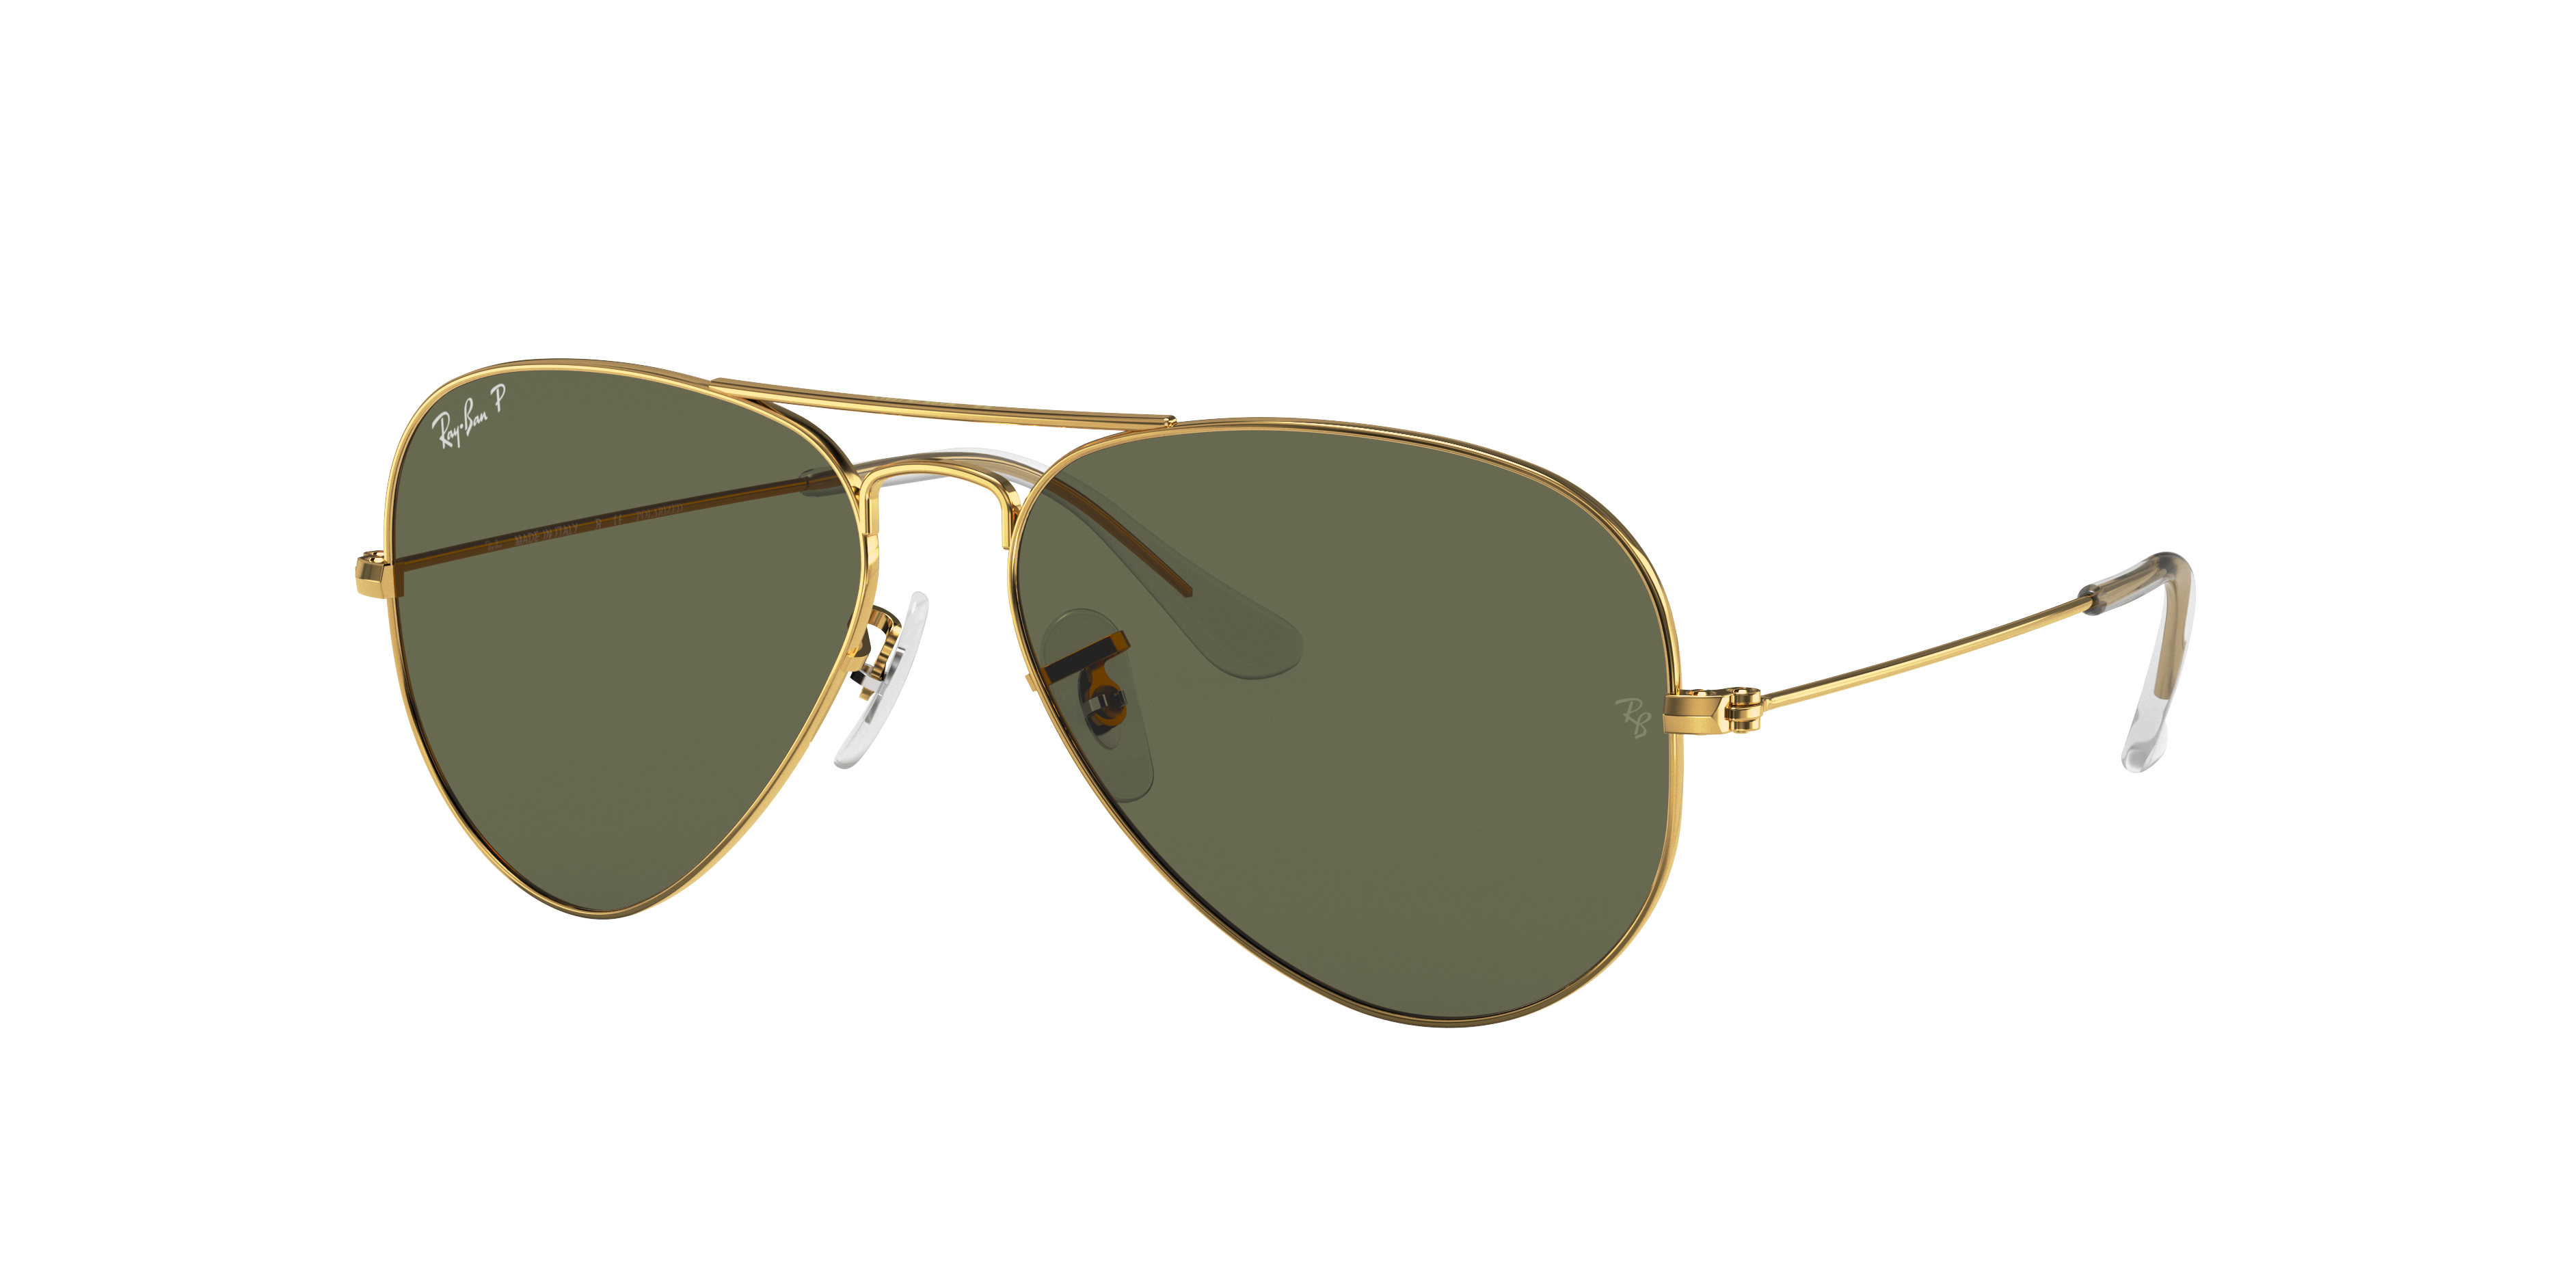 Sunglasses AVIATOR Aviator Glasses Medium Size Ladies/Mens 